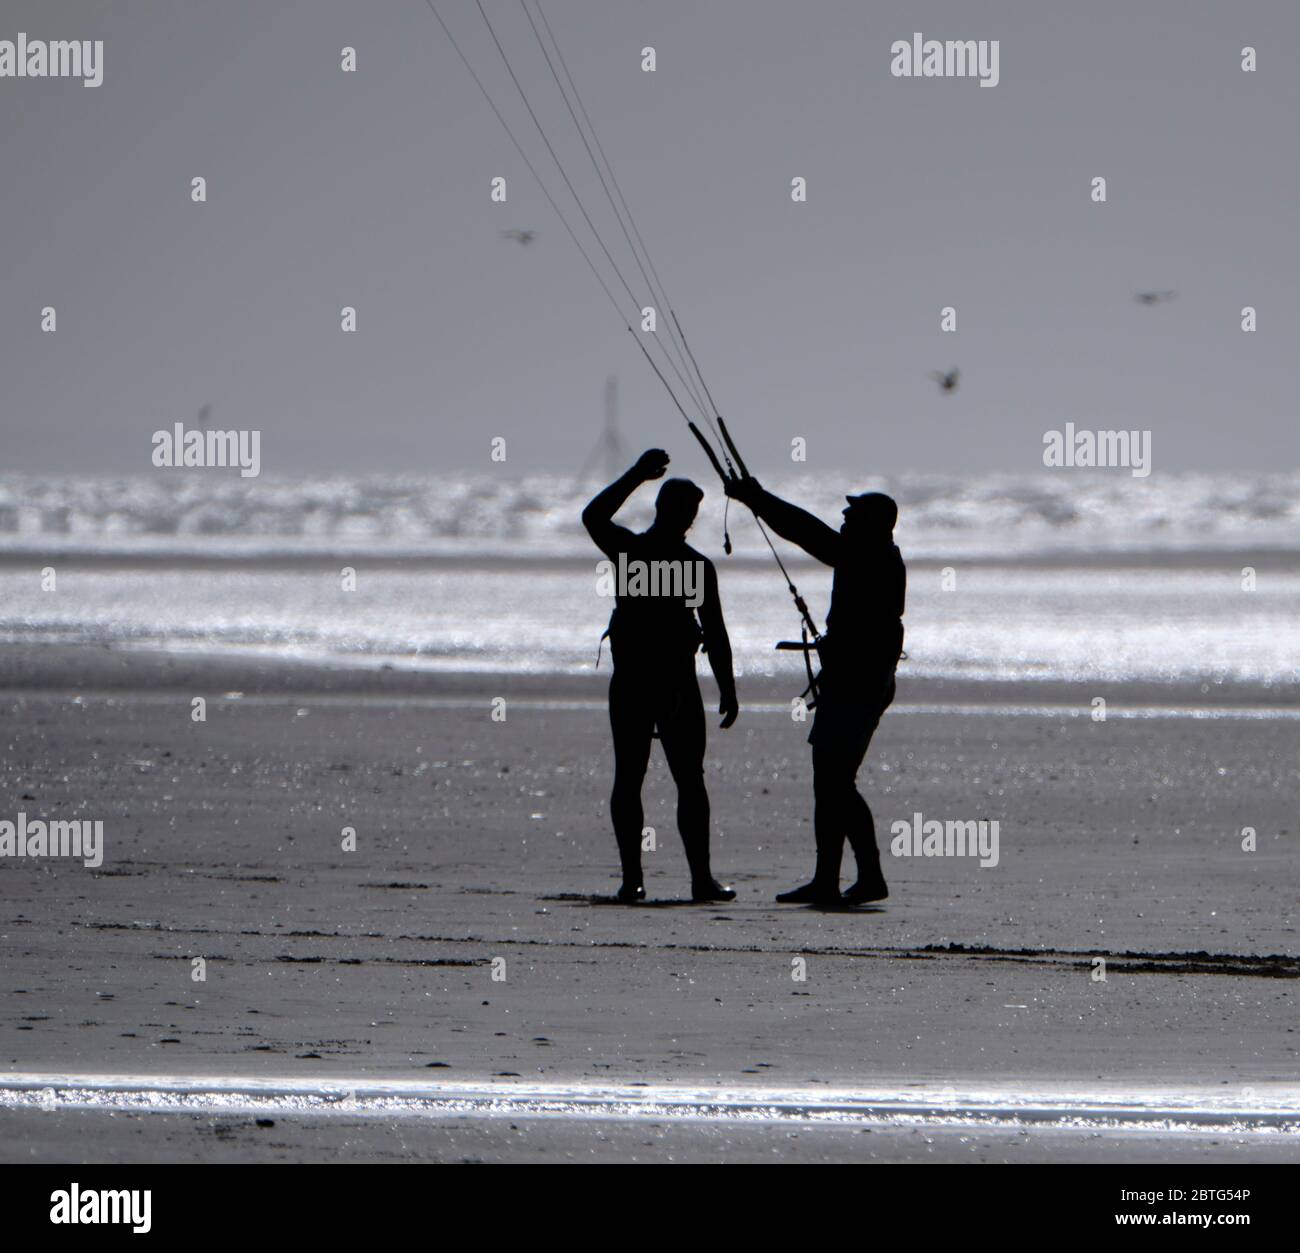 Silhouette von zwei Personen mit einem Drachen am Strand, vor einem hellen Himmel, der auf nassem Sand reflektiert. Stockfoto